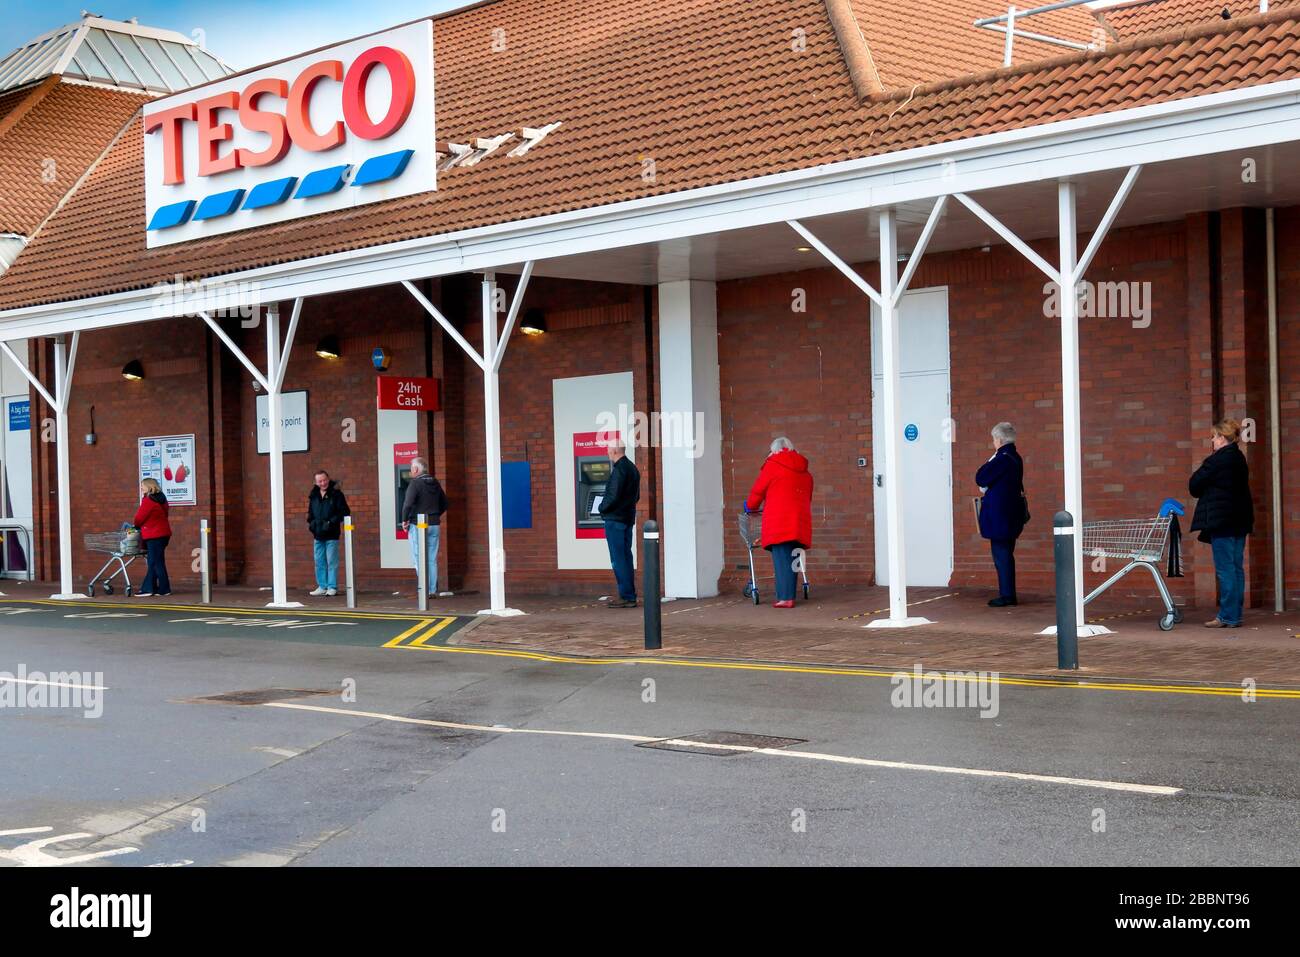 Una coda di persone in attesa di entrare in un supermercato Tesco sono distanziati di 2 metri come distanza sicura durante la pandemia di Coronavirus o Covi9 19 Foto Stock